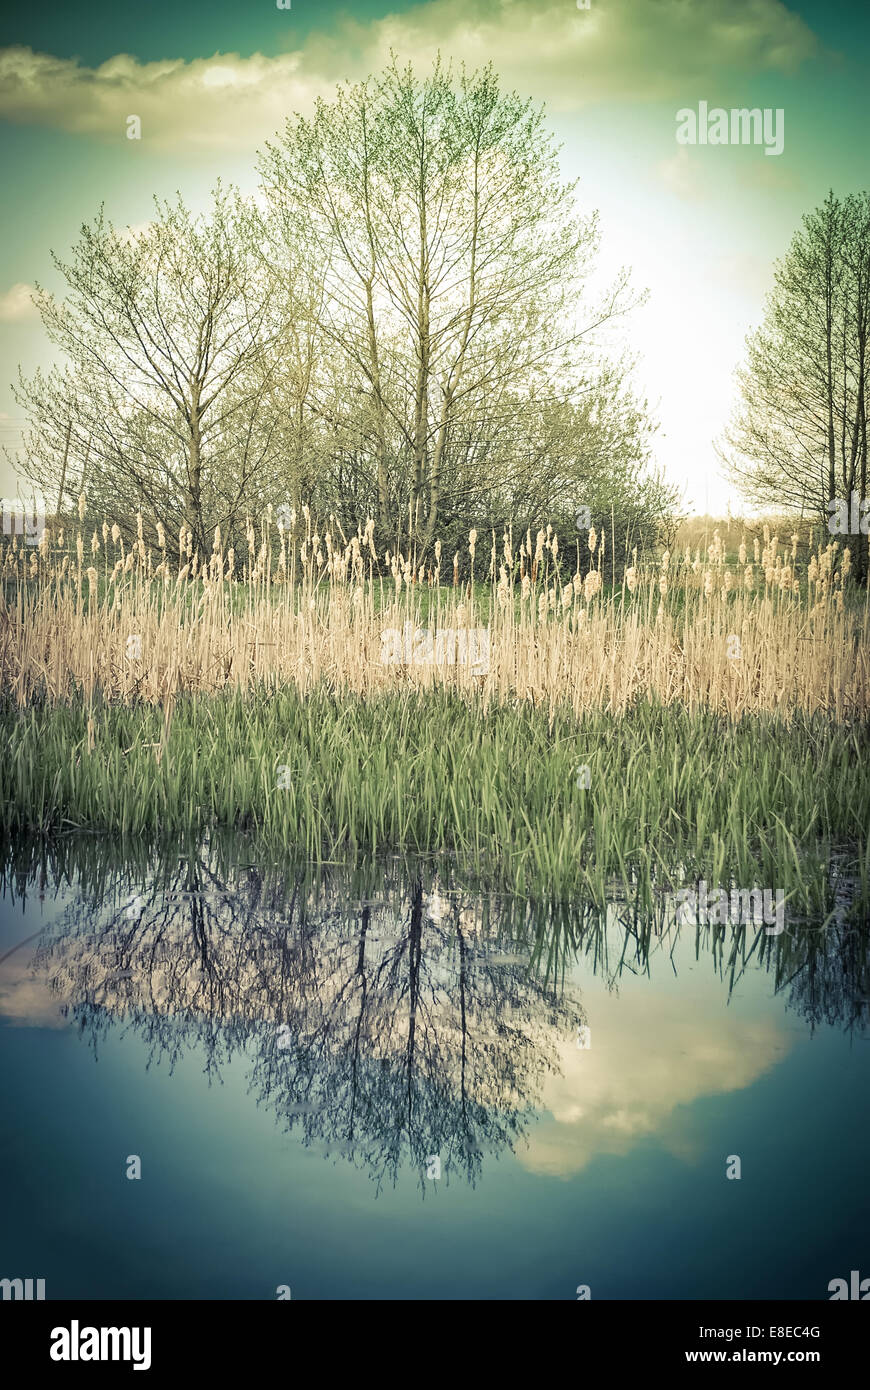 Giornata di sole in campagna. Paesaggio rurale con alberi e cielo riflesso nel lago. Sullo sfondo della natura in stile vintage Foto Stock